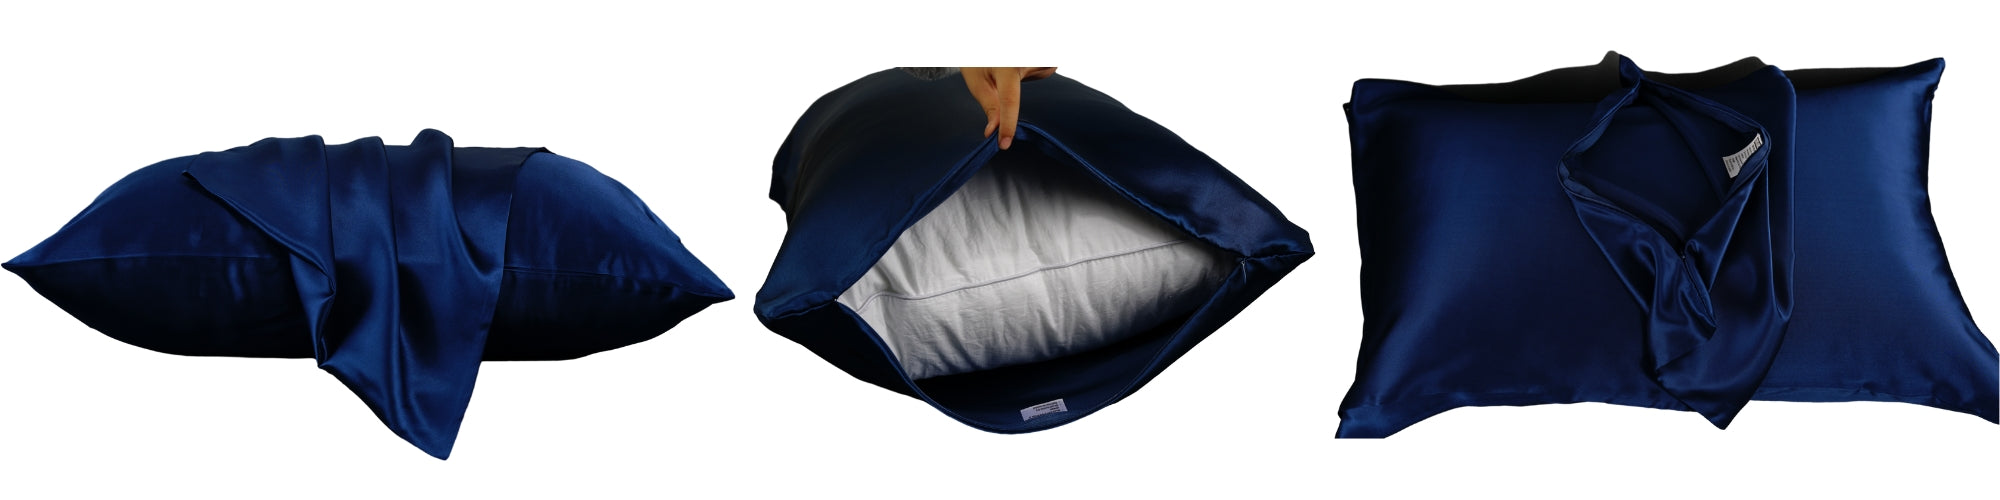 silk pillowcase with zipper